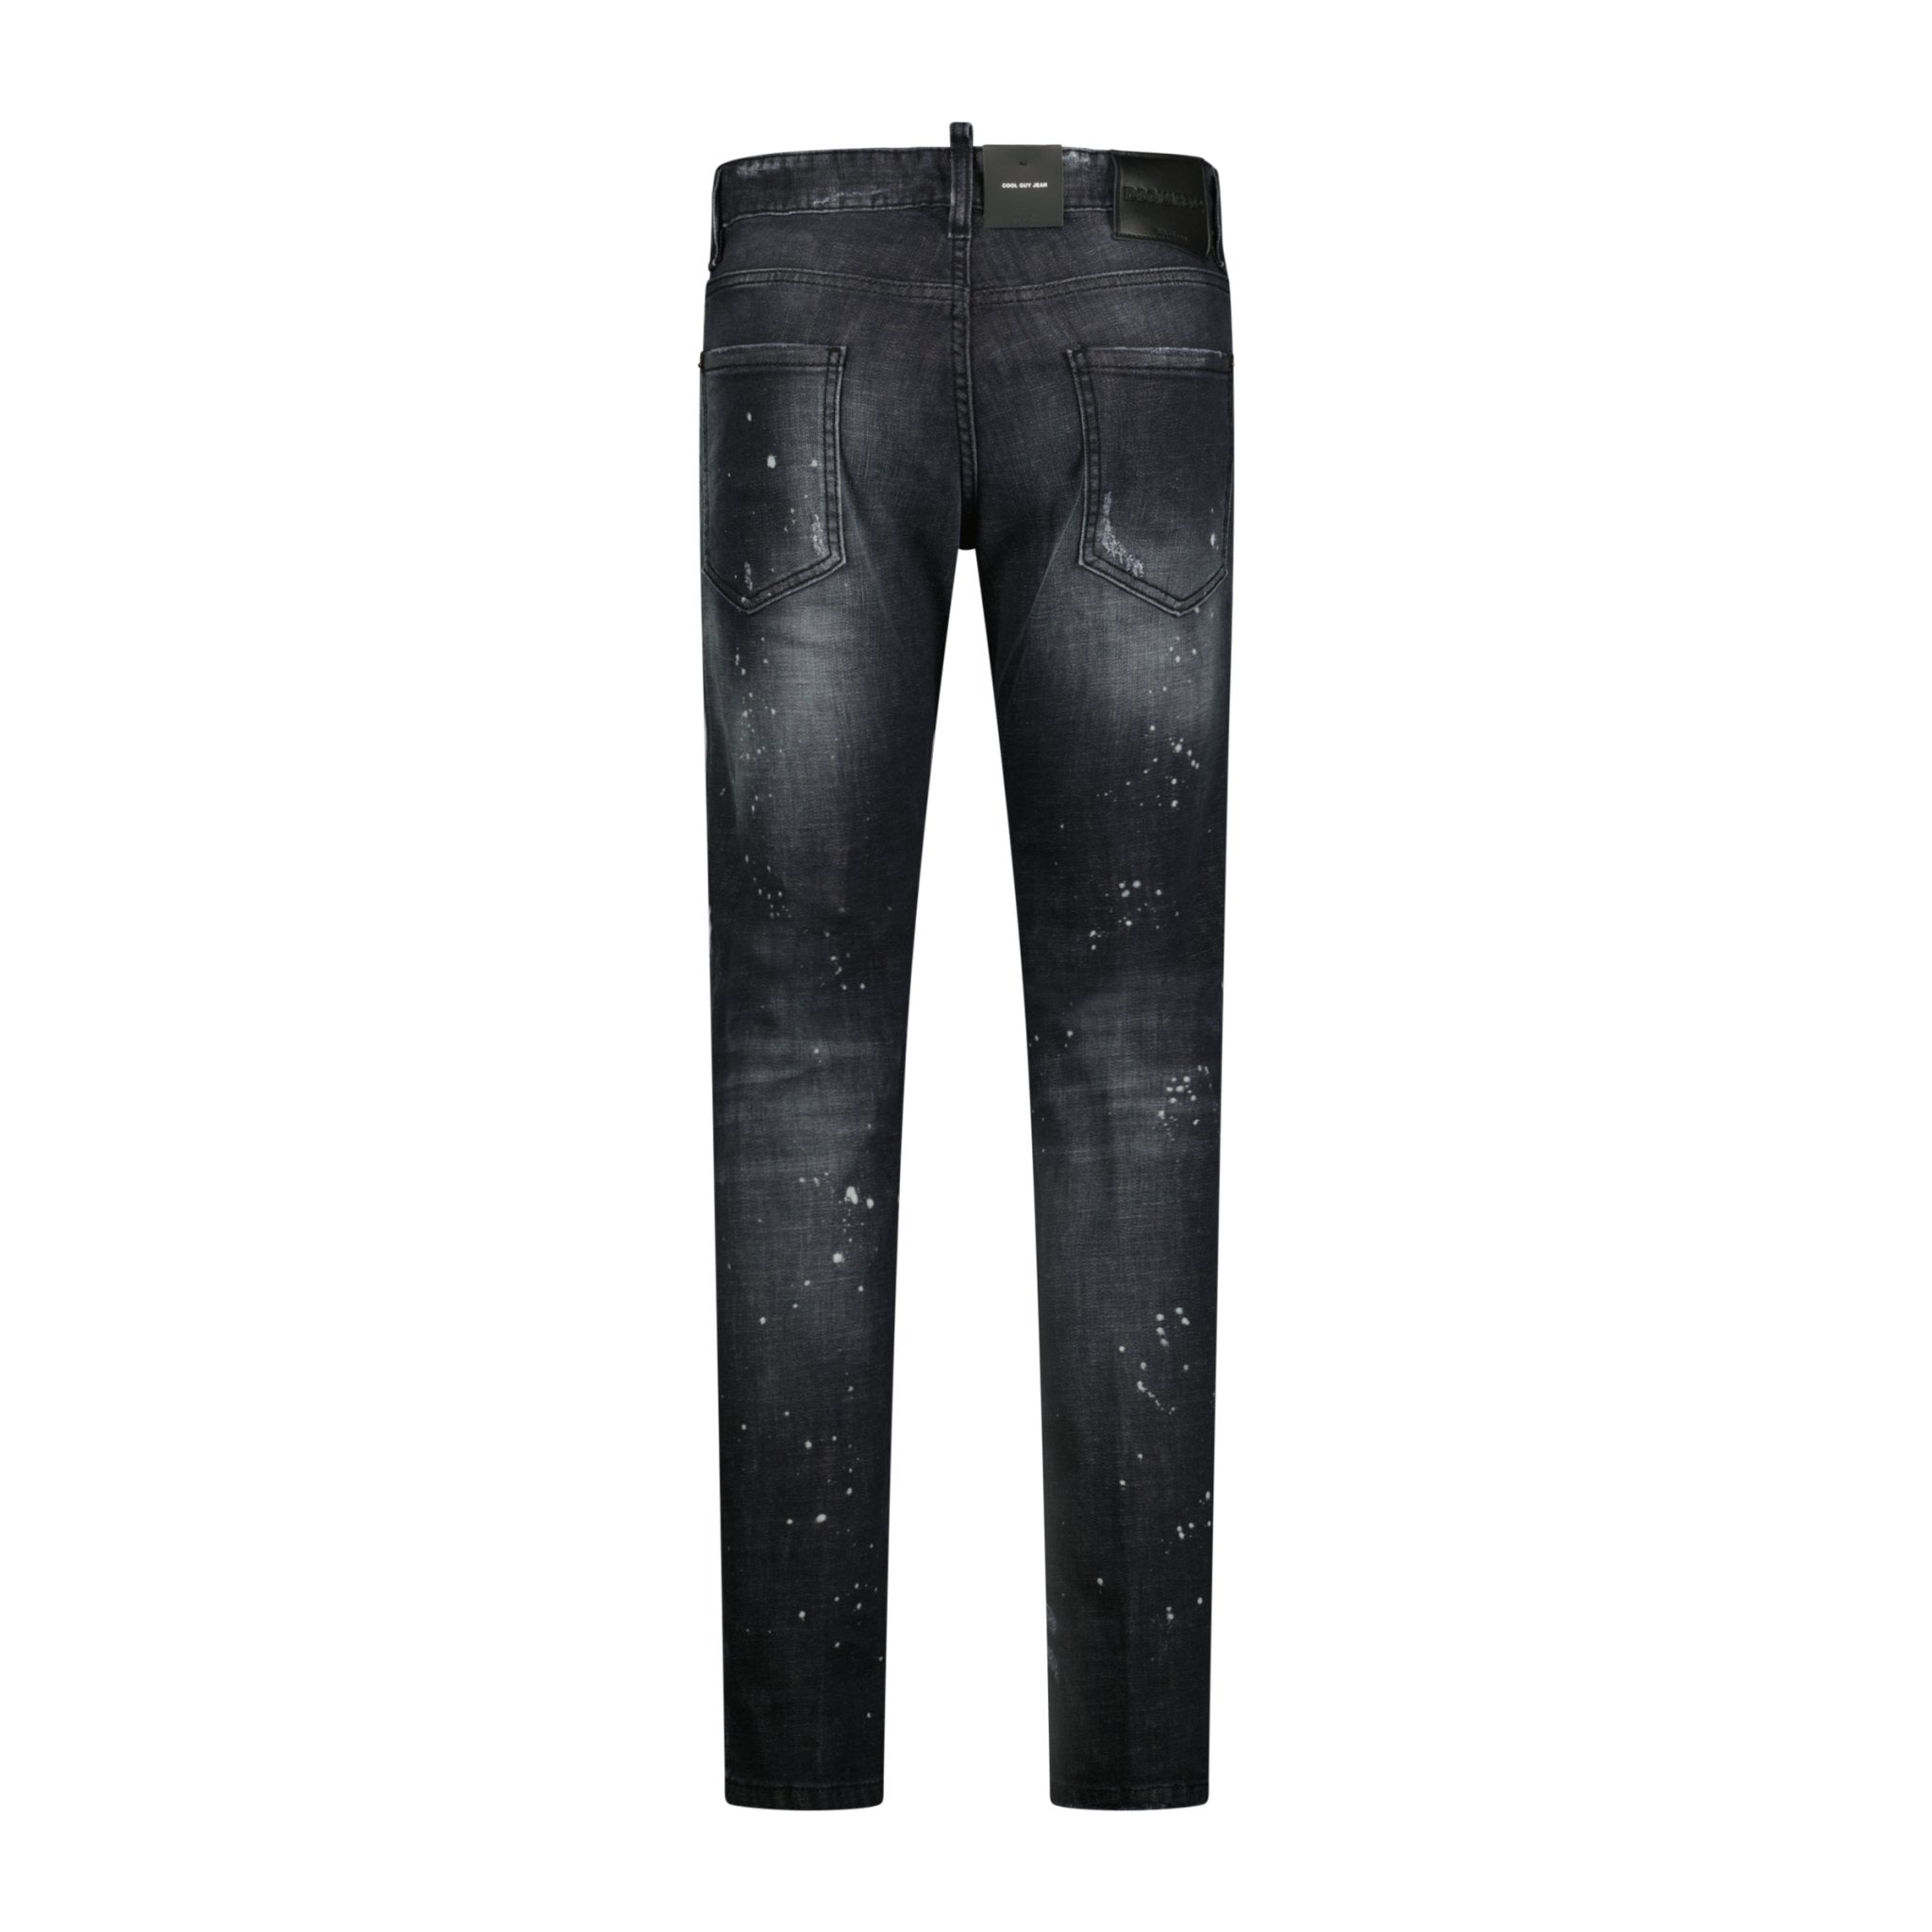 DSquared2 'Cool Guy' Slim Fit Jeans Black - Boinclo ltd